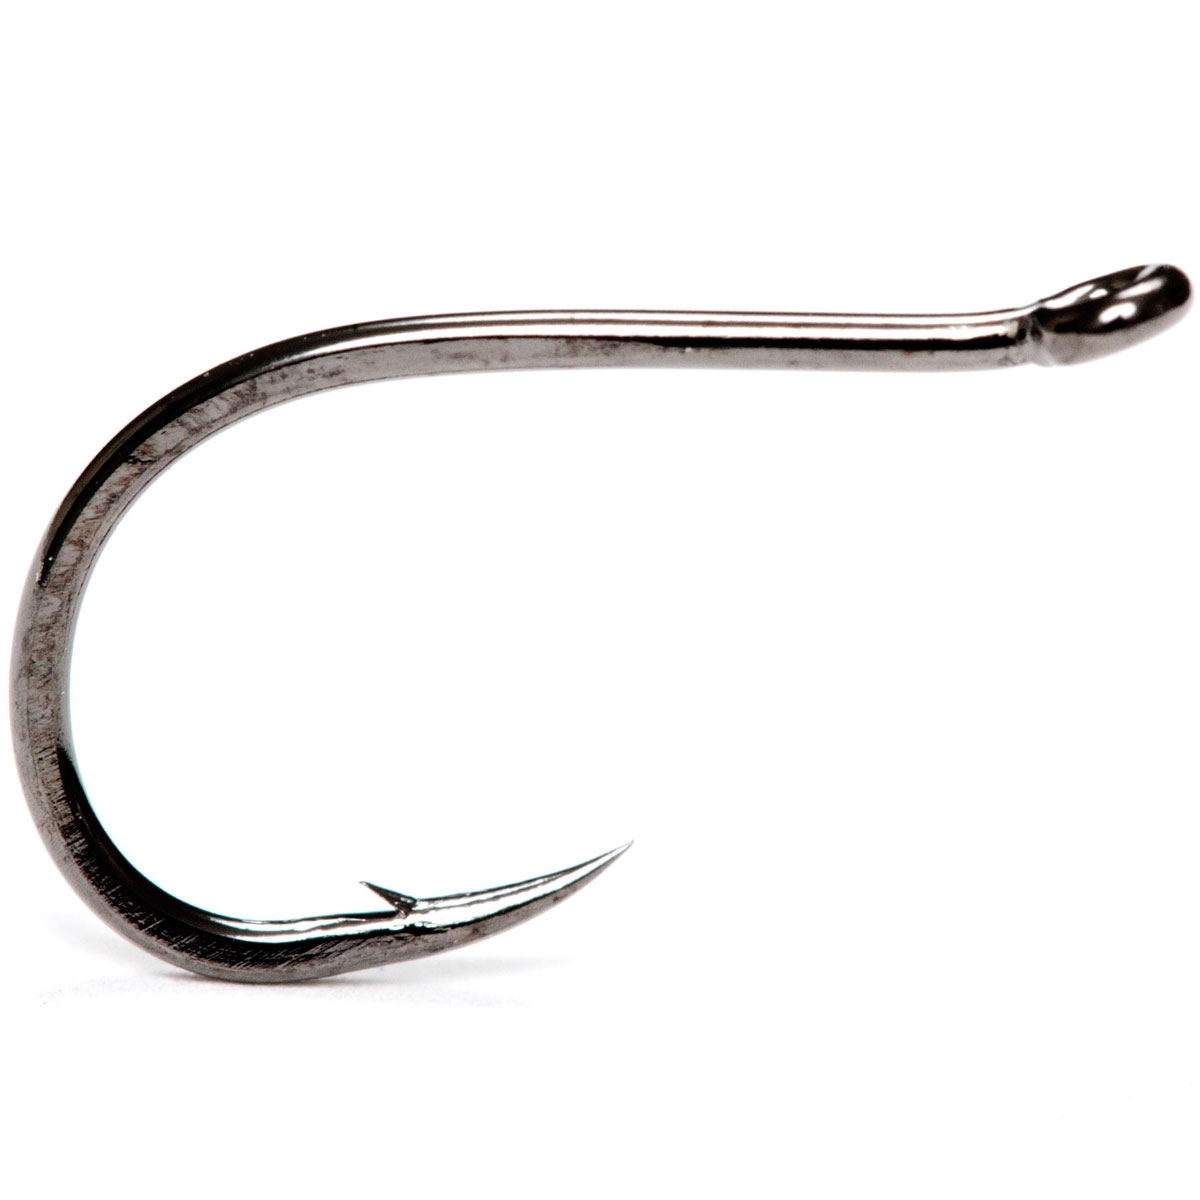 Partridge Stinger Hooks - Fly Tying Fishing Hook